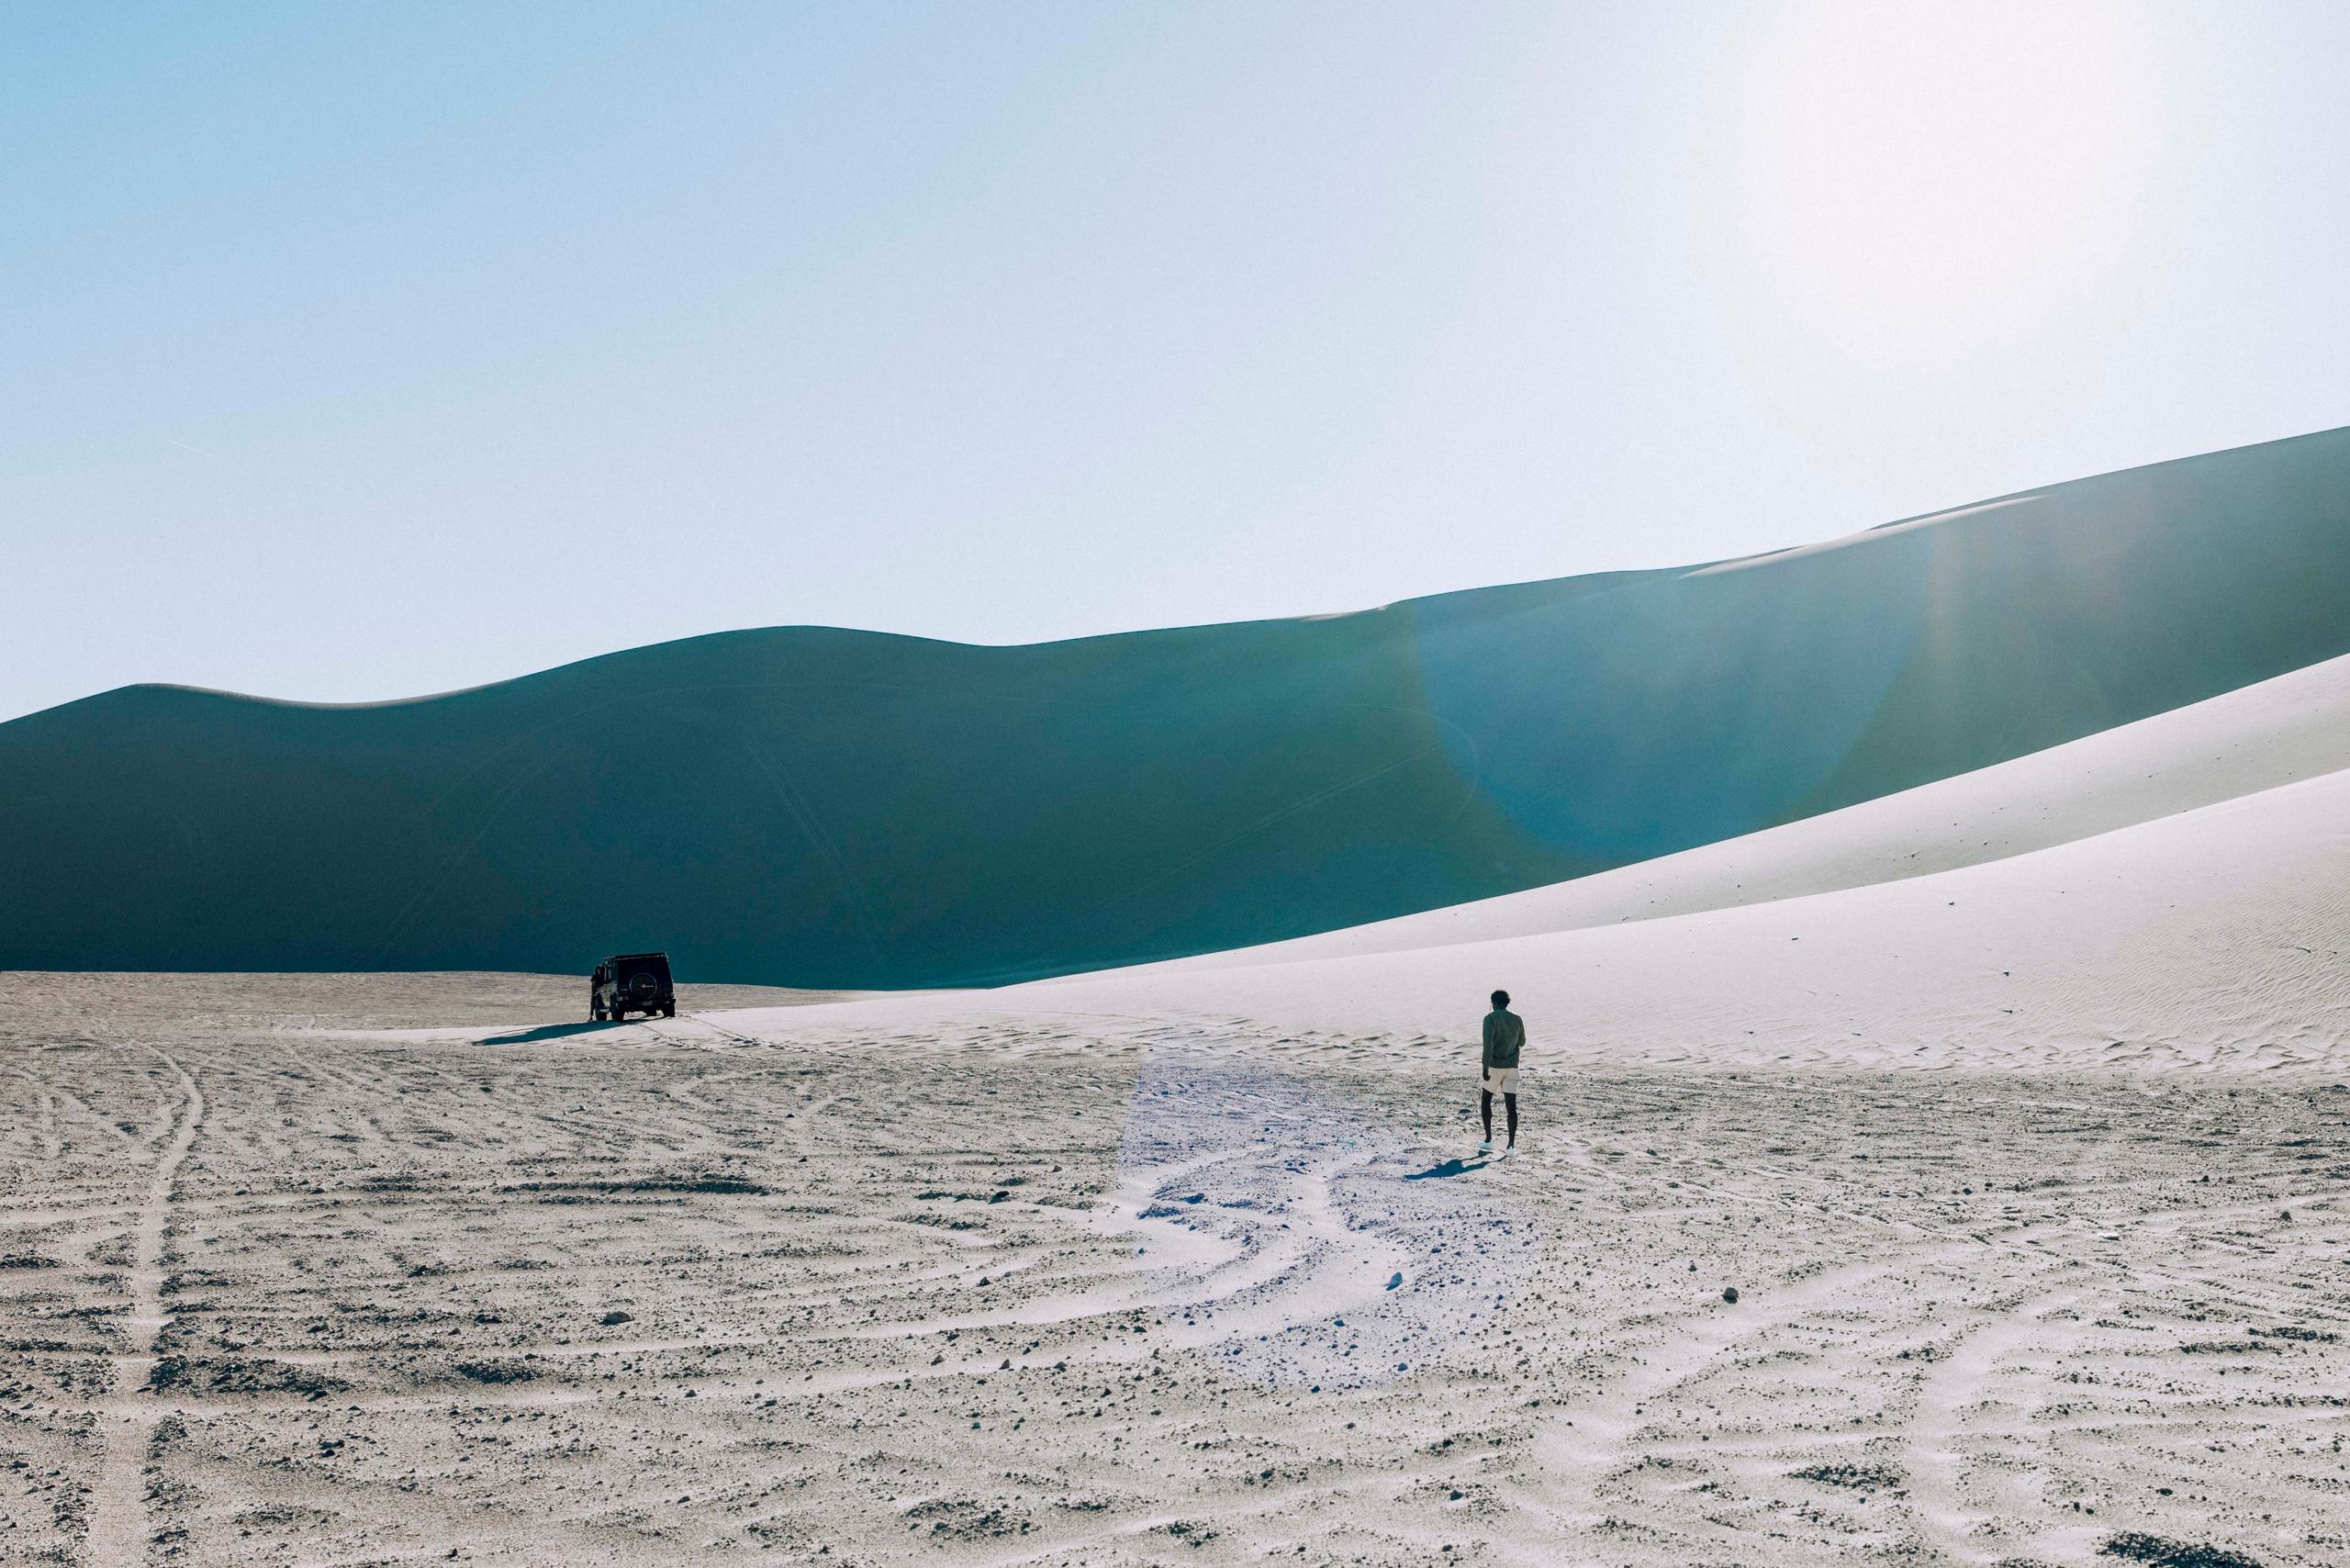 Man walking towards Land Rover amongst vast expanse of desert dunes